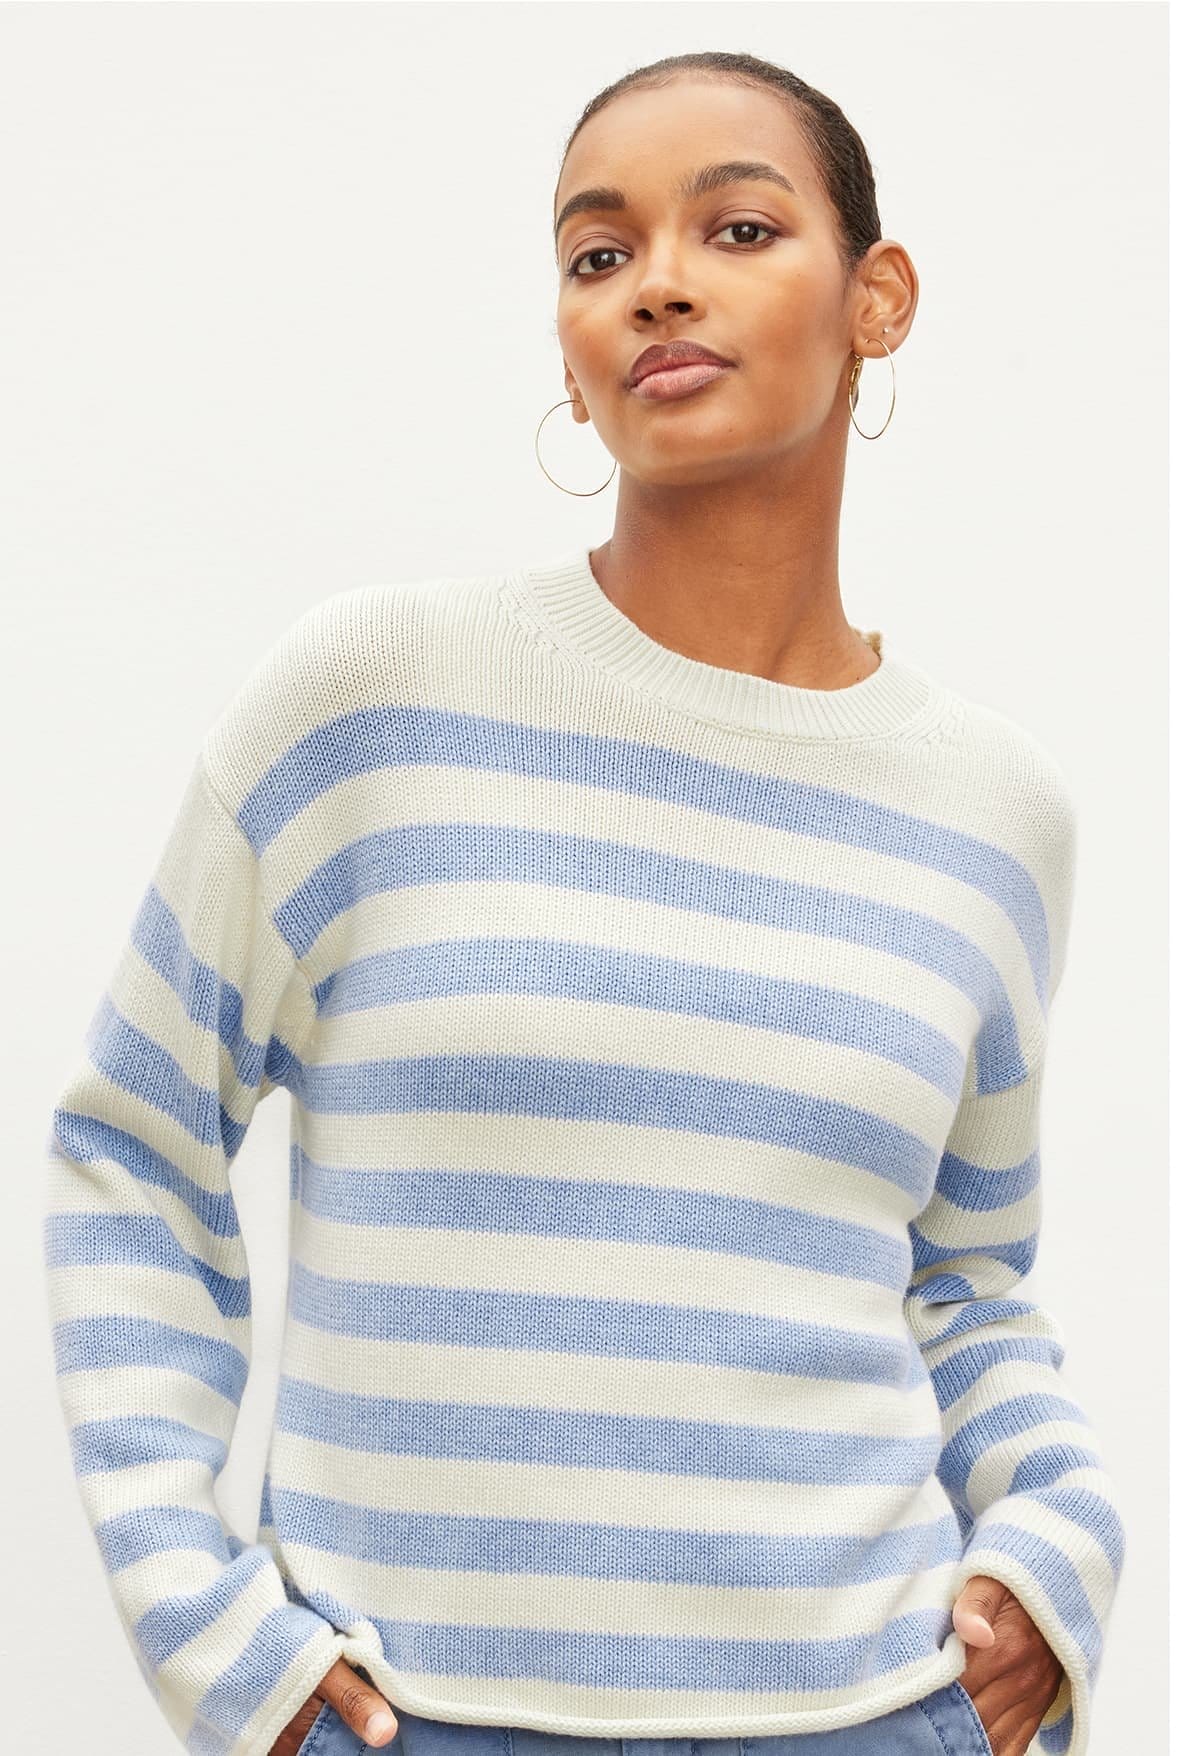 Model wearing the Lex Sweater